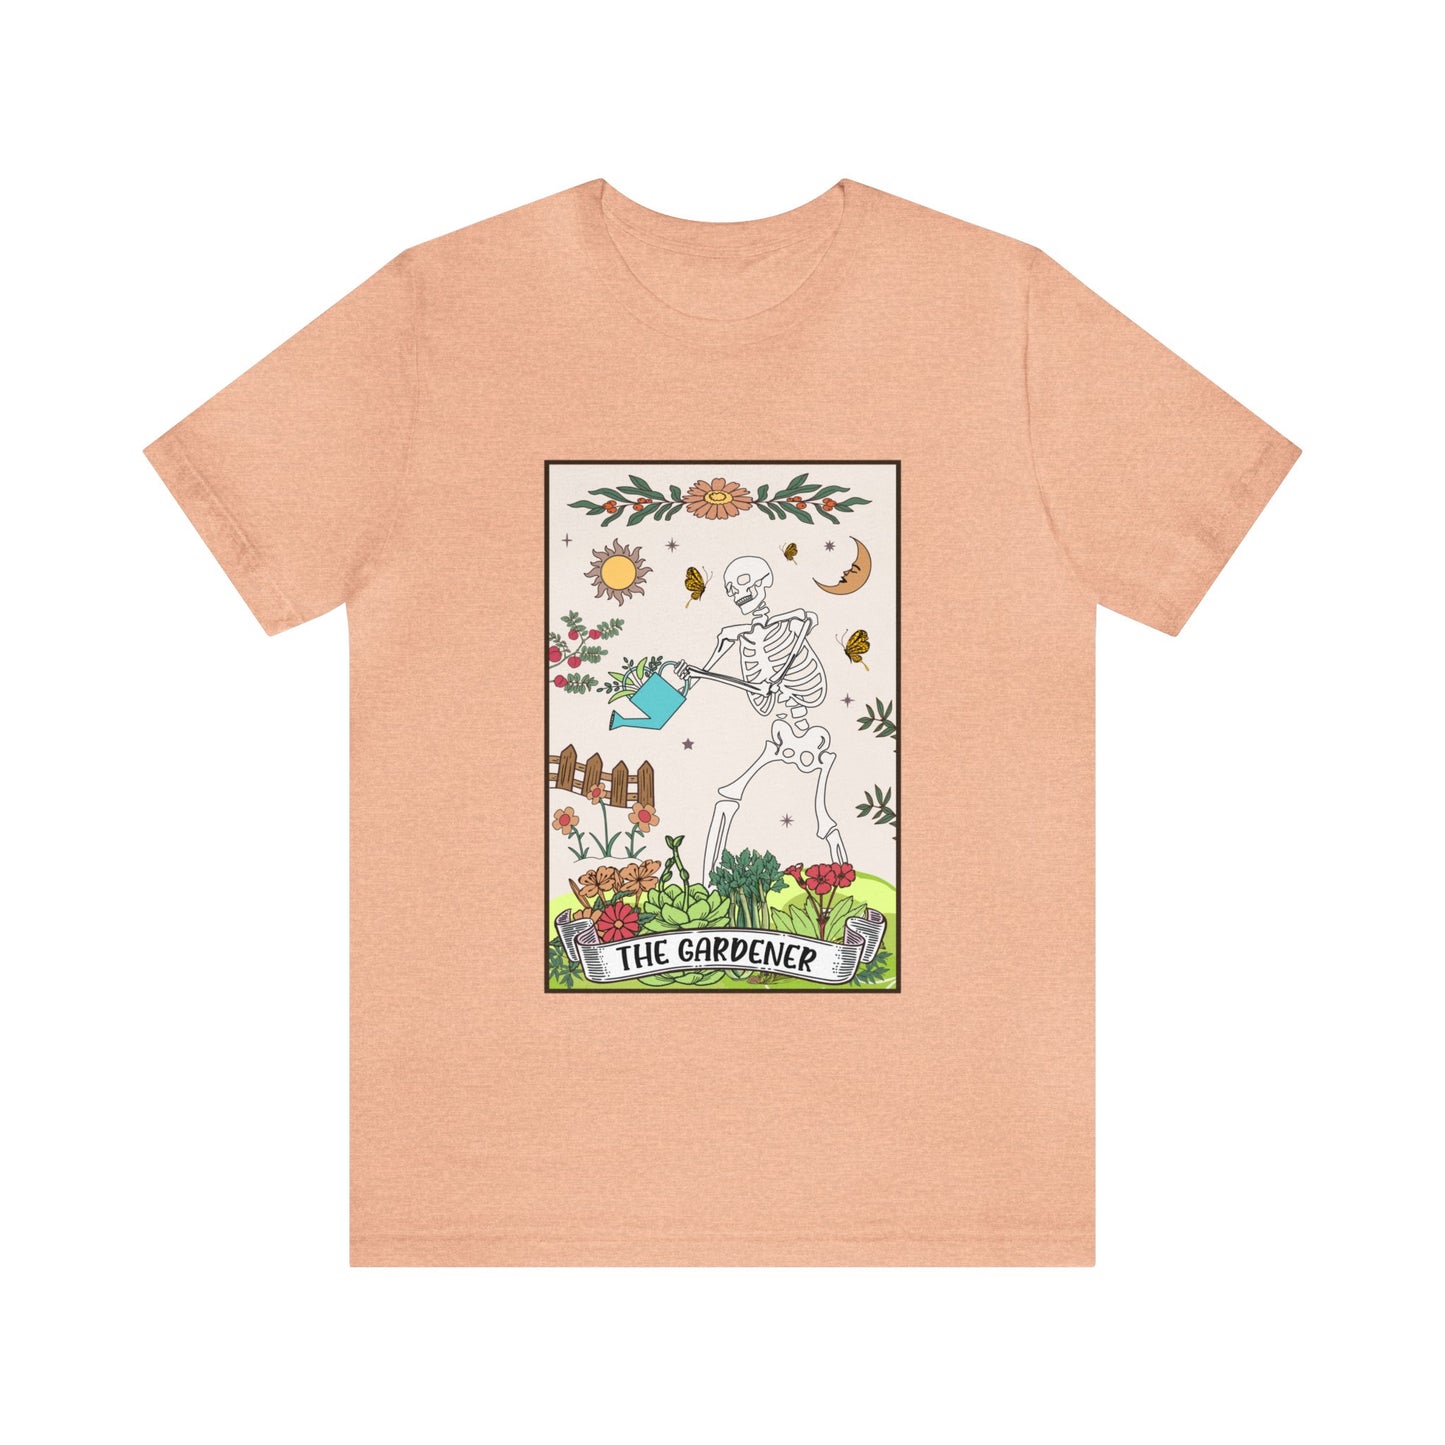 The Gardener Short Sleeve Unisex T-Shirt